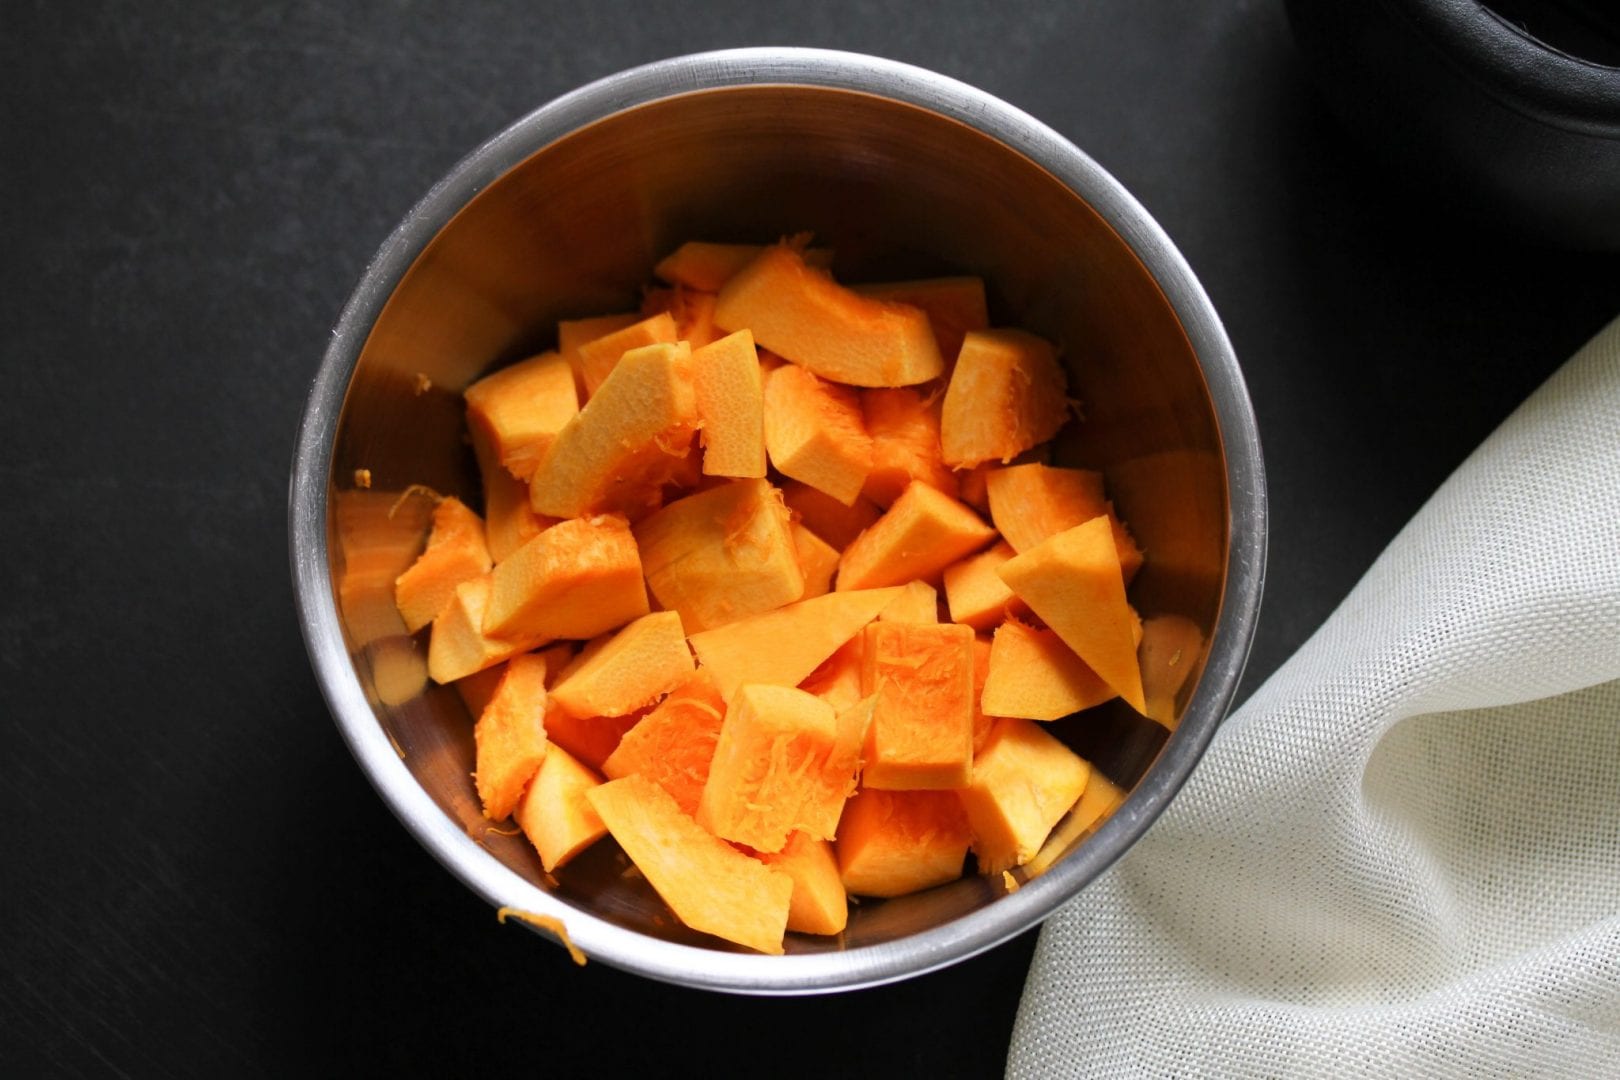 Pumpkin puree - first foods